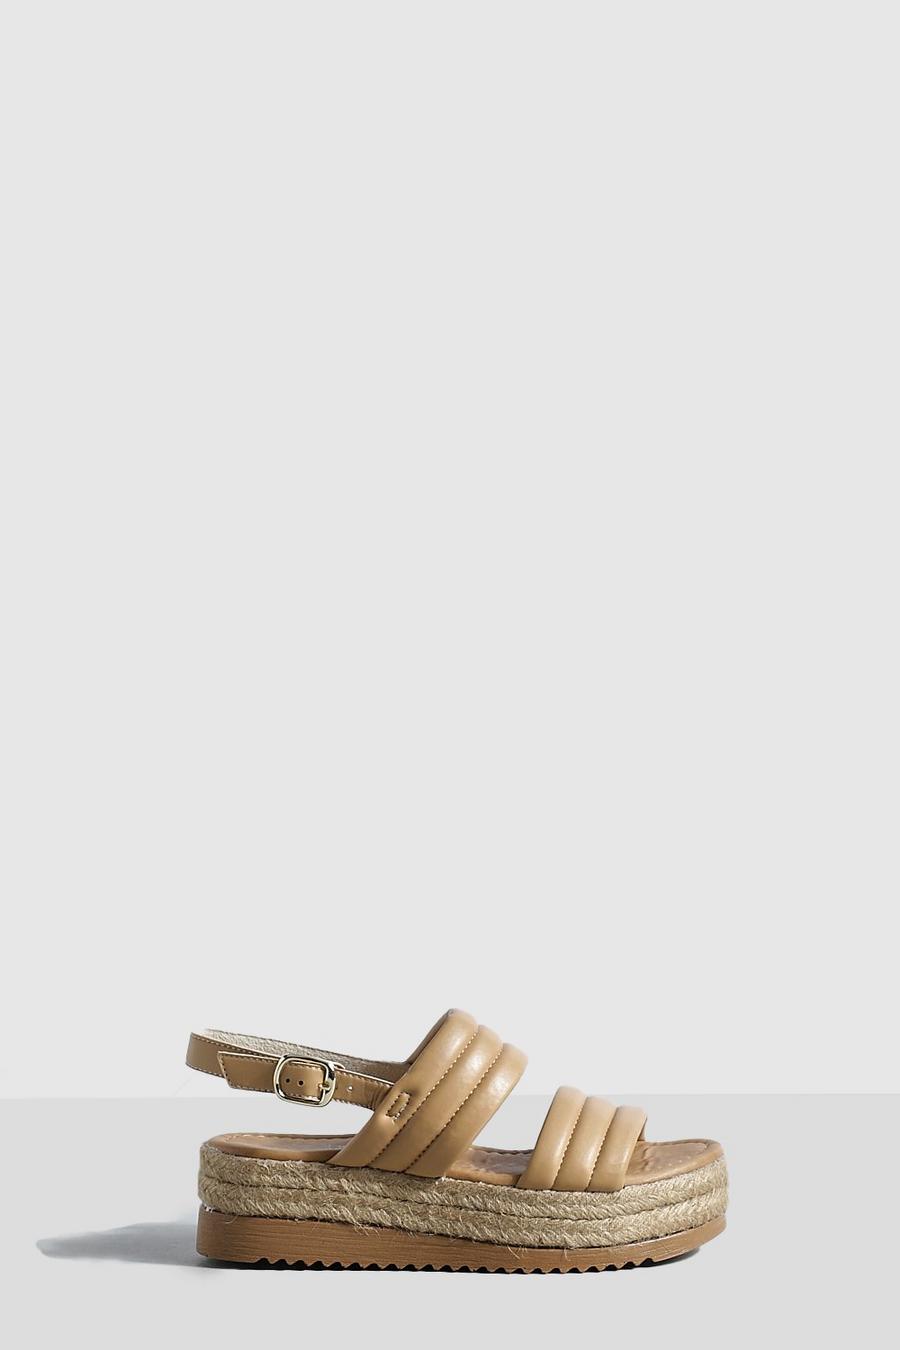 Sandali Flatform a calzata ampia con doppia fascetta imbottita, Tan marrón